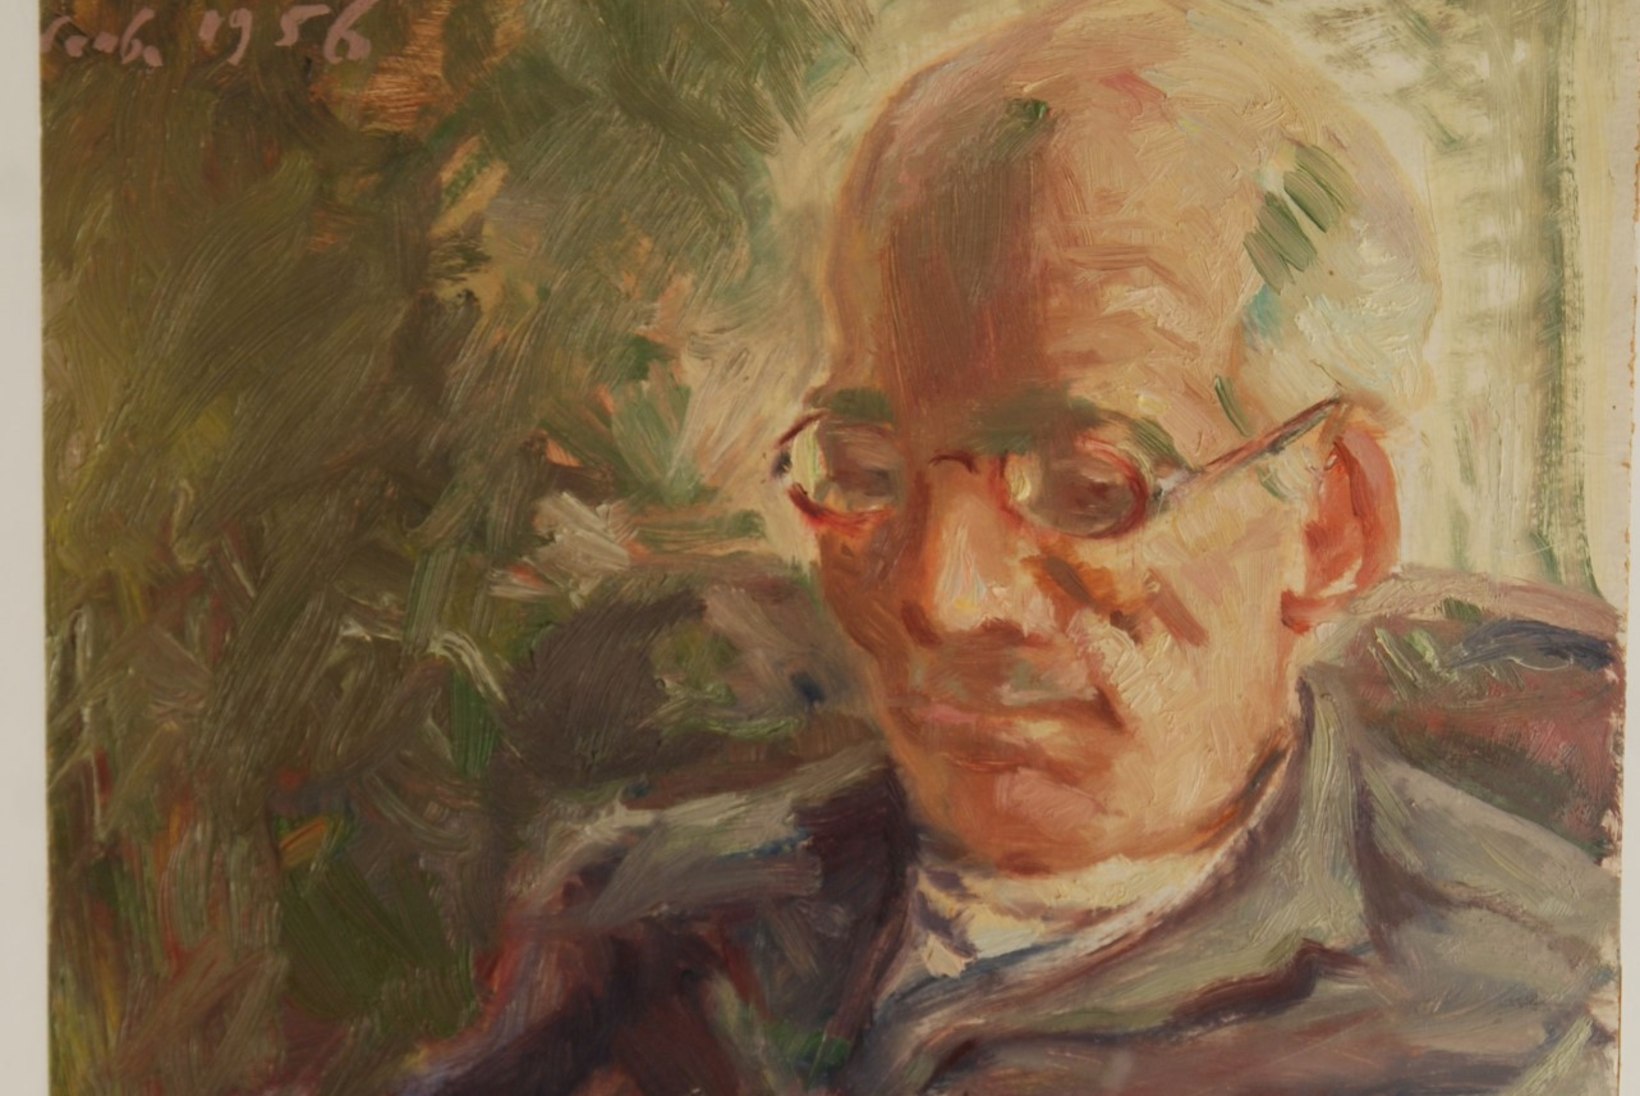 Kas sina tead: kes on see mees Eesti portreekunsti tippude hulka kuuluval maalil?